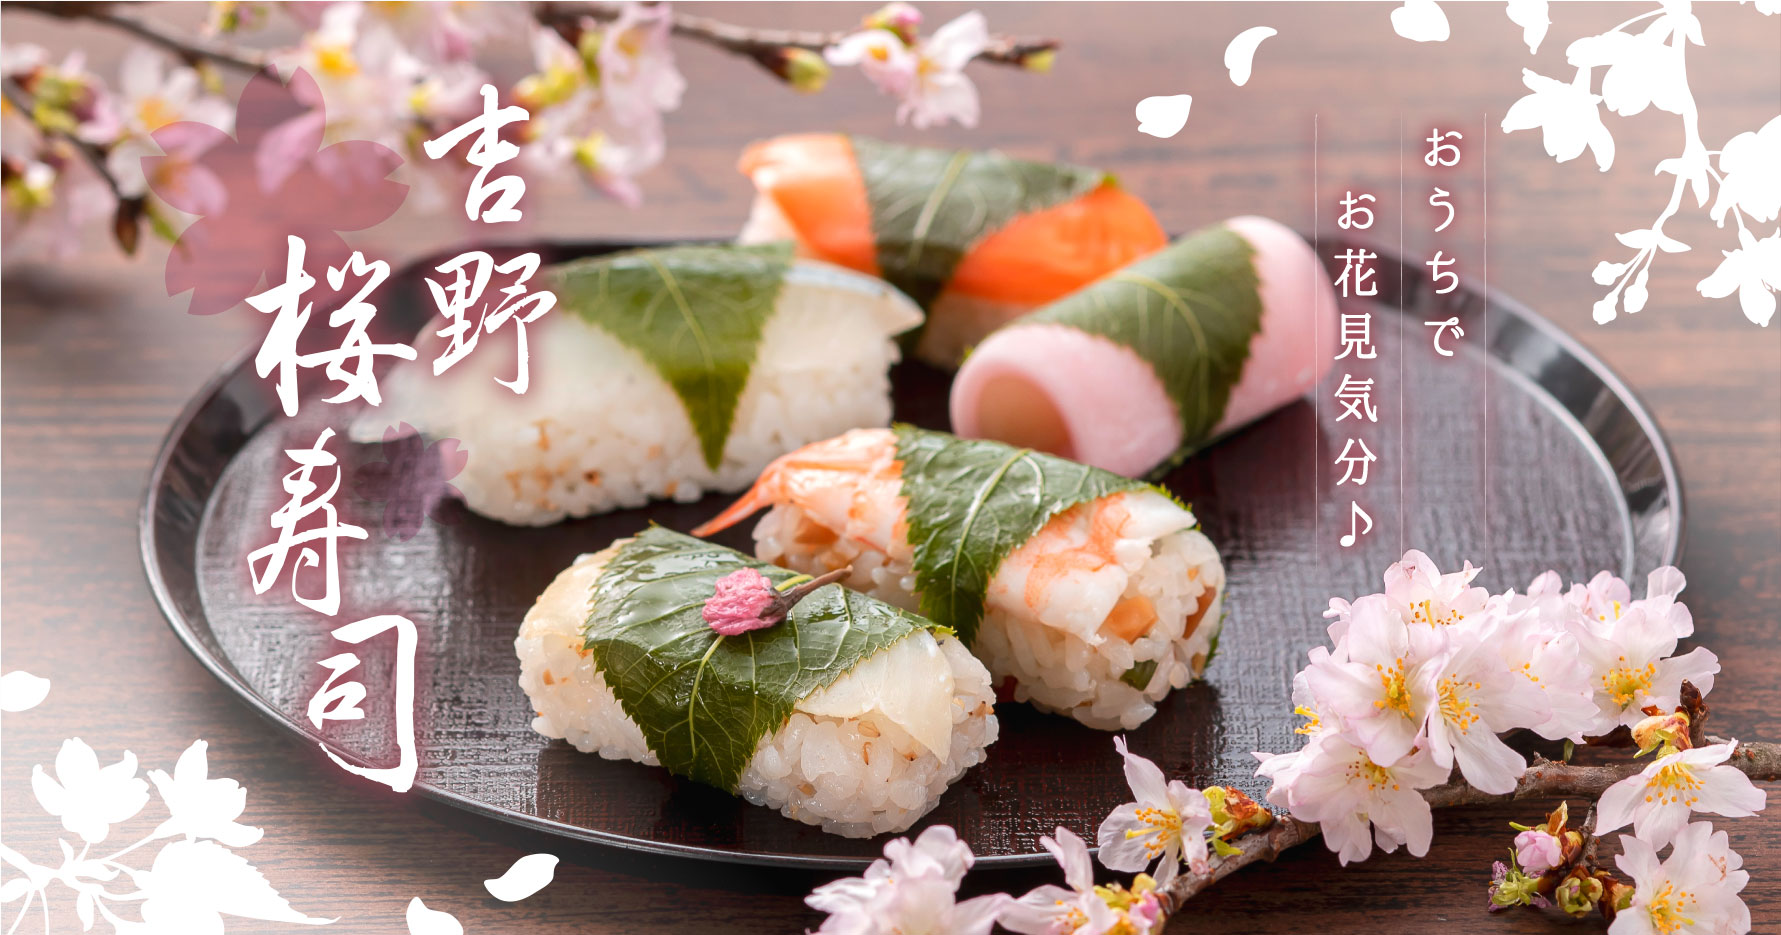 桜寿司詰合せ一段